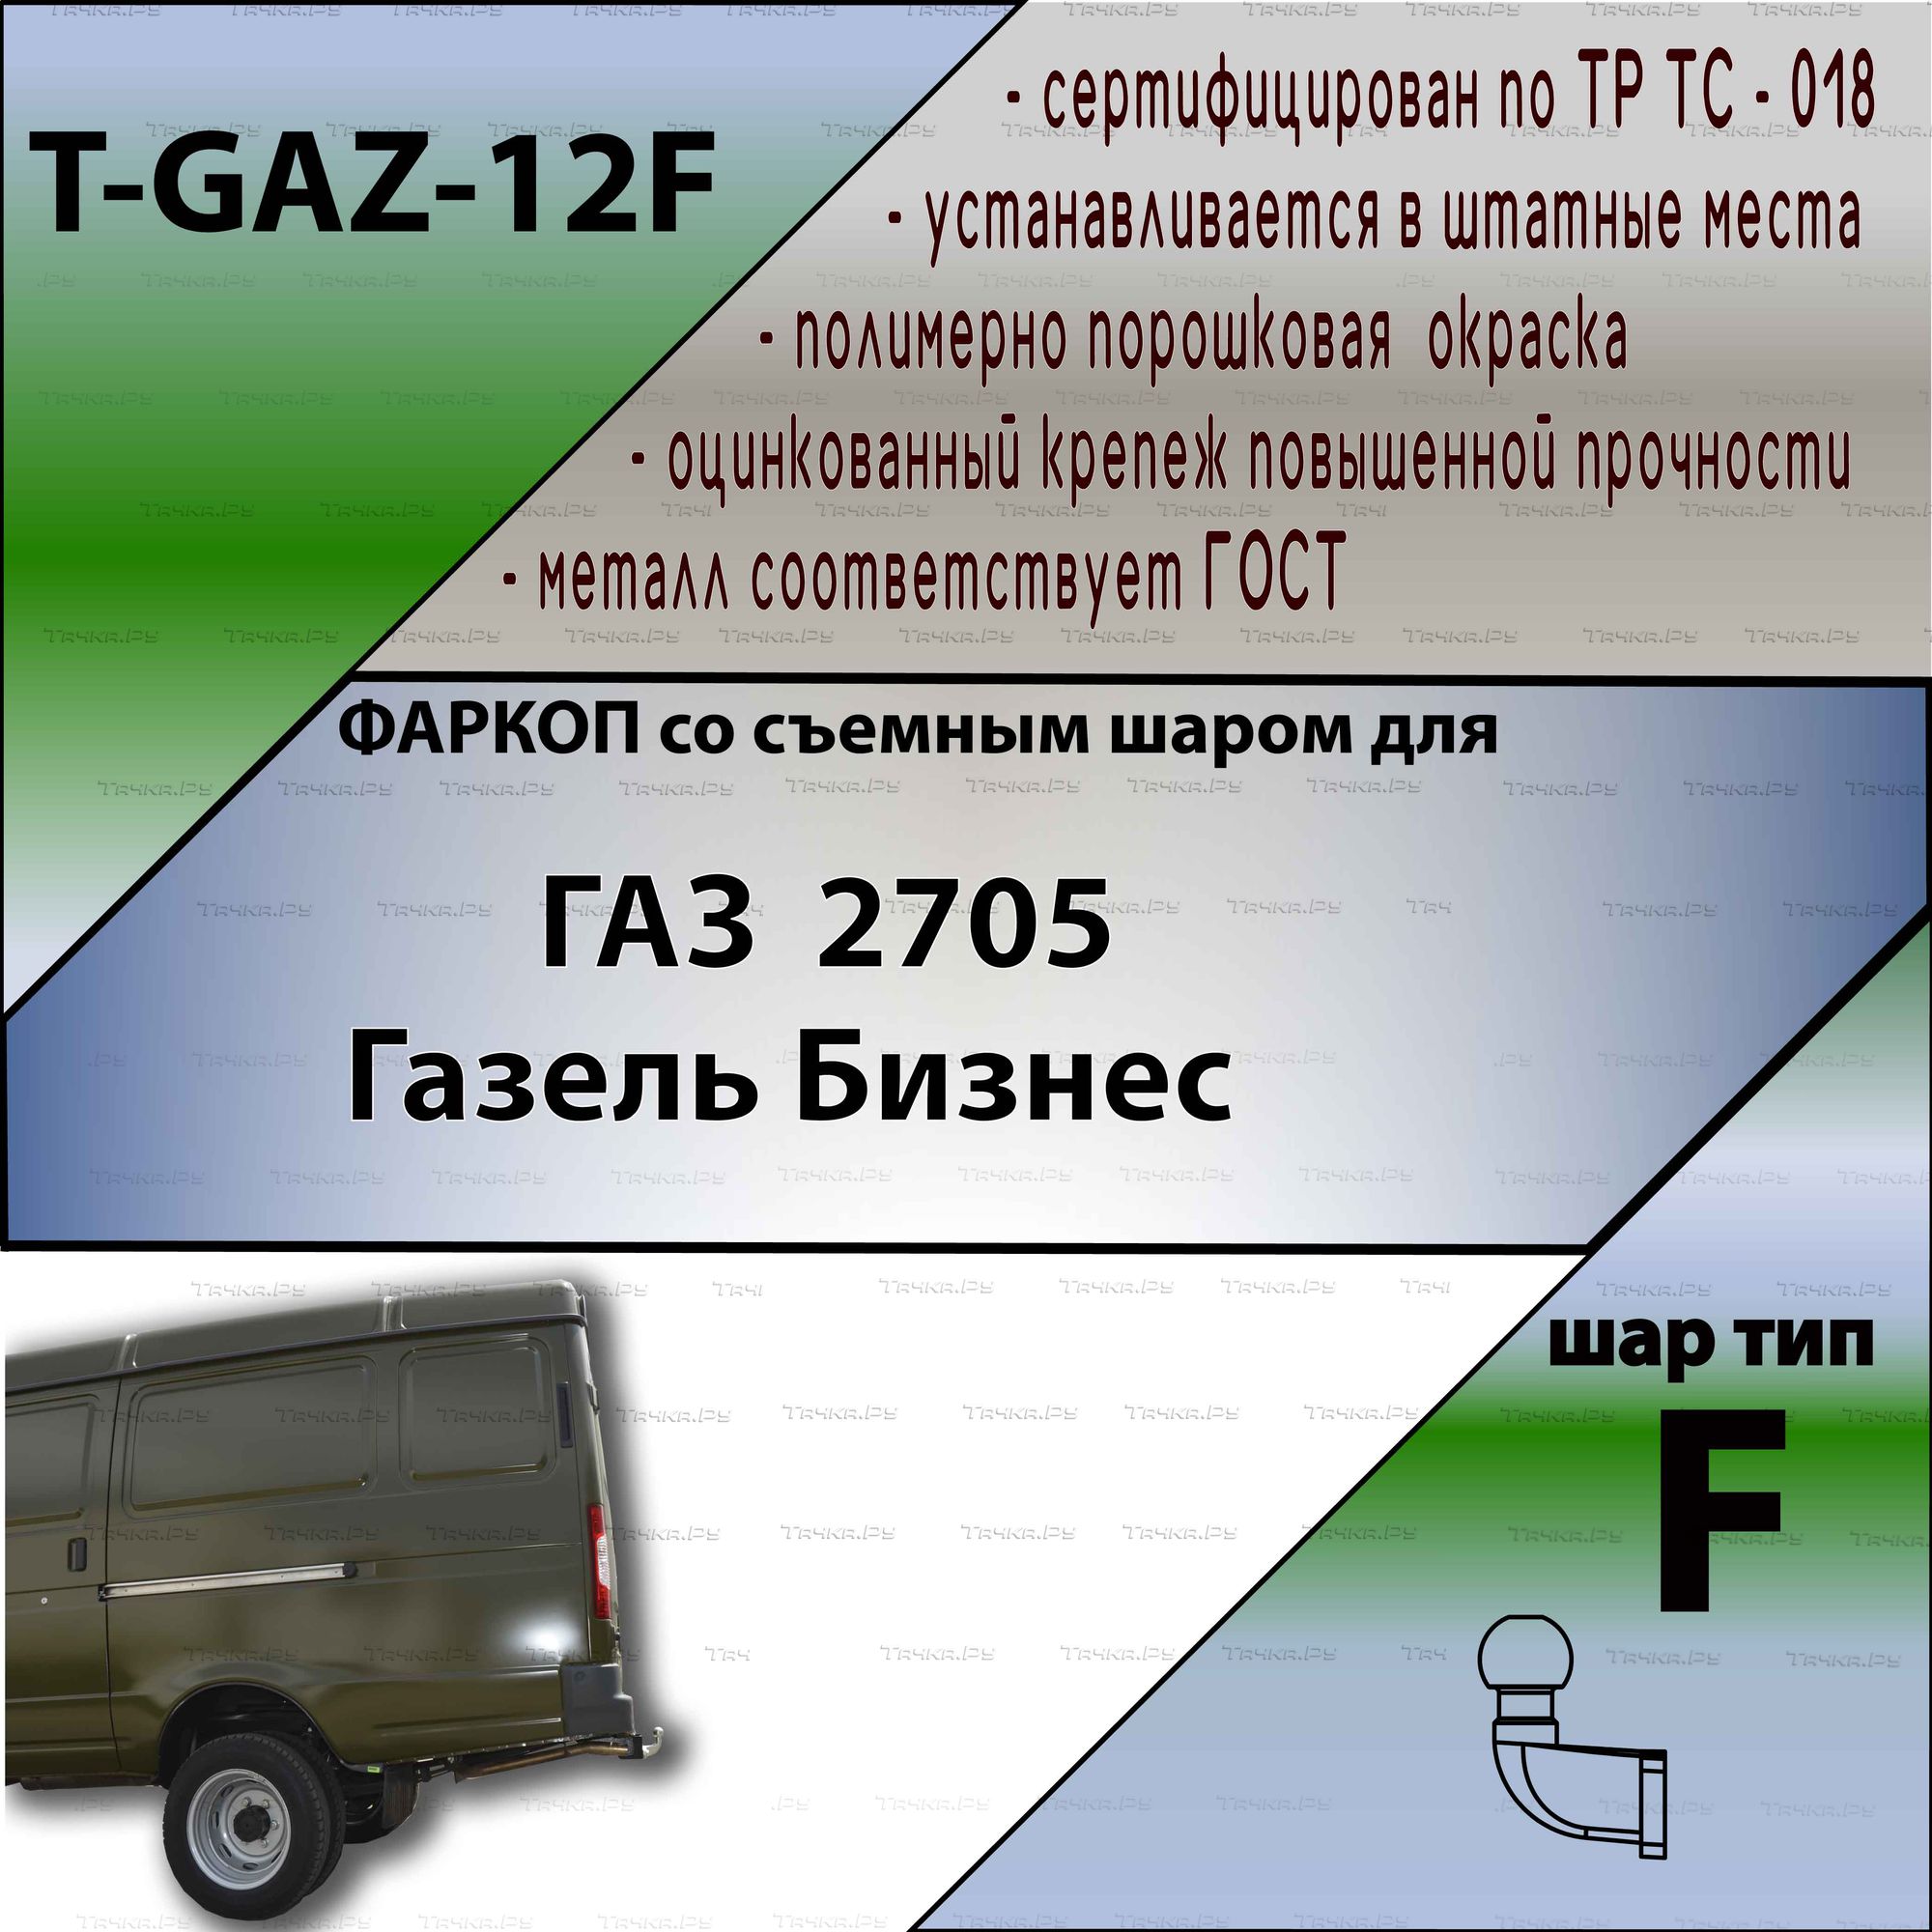 Вахтовые автобусы на базе ГАЗ, КАМАЗ - купить вахтовки от производителя по сниженной цене